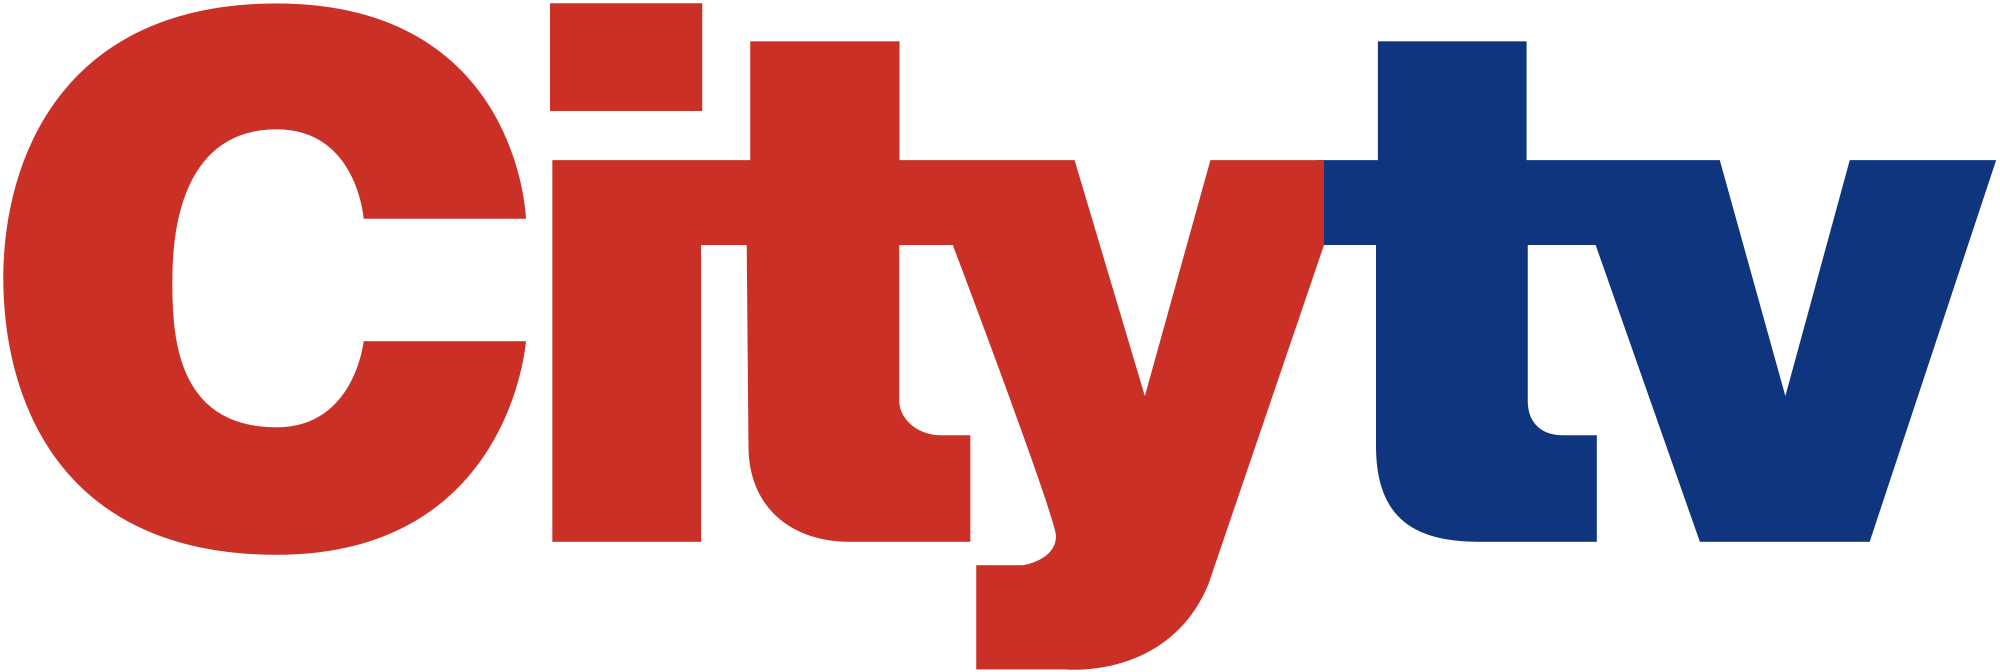 Open - City Tv Canada Logo (2000x672)